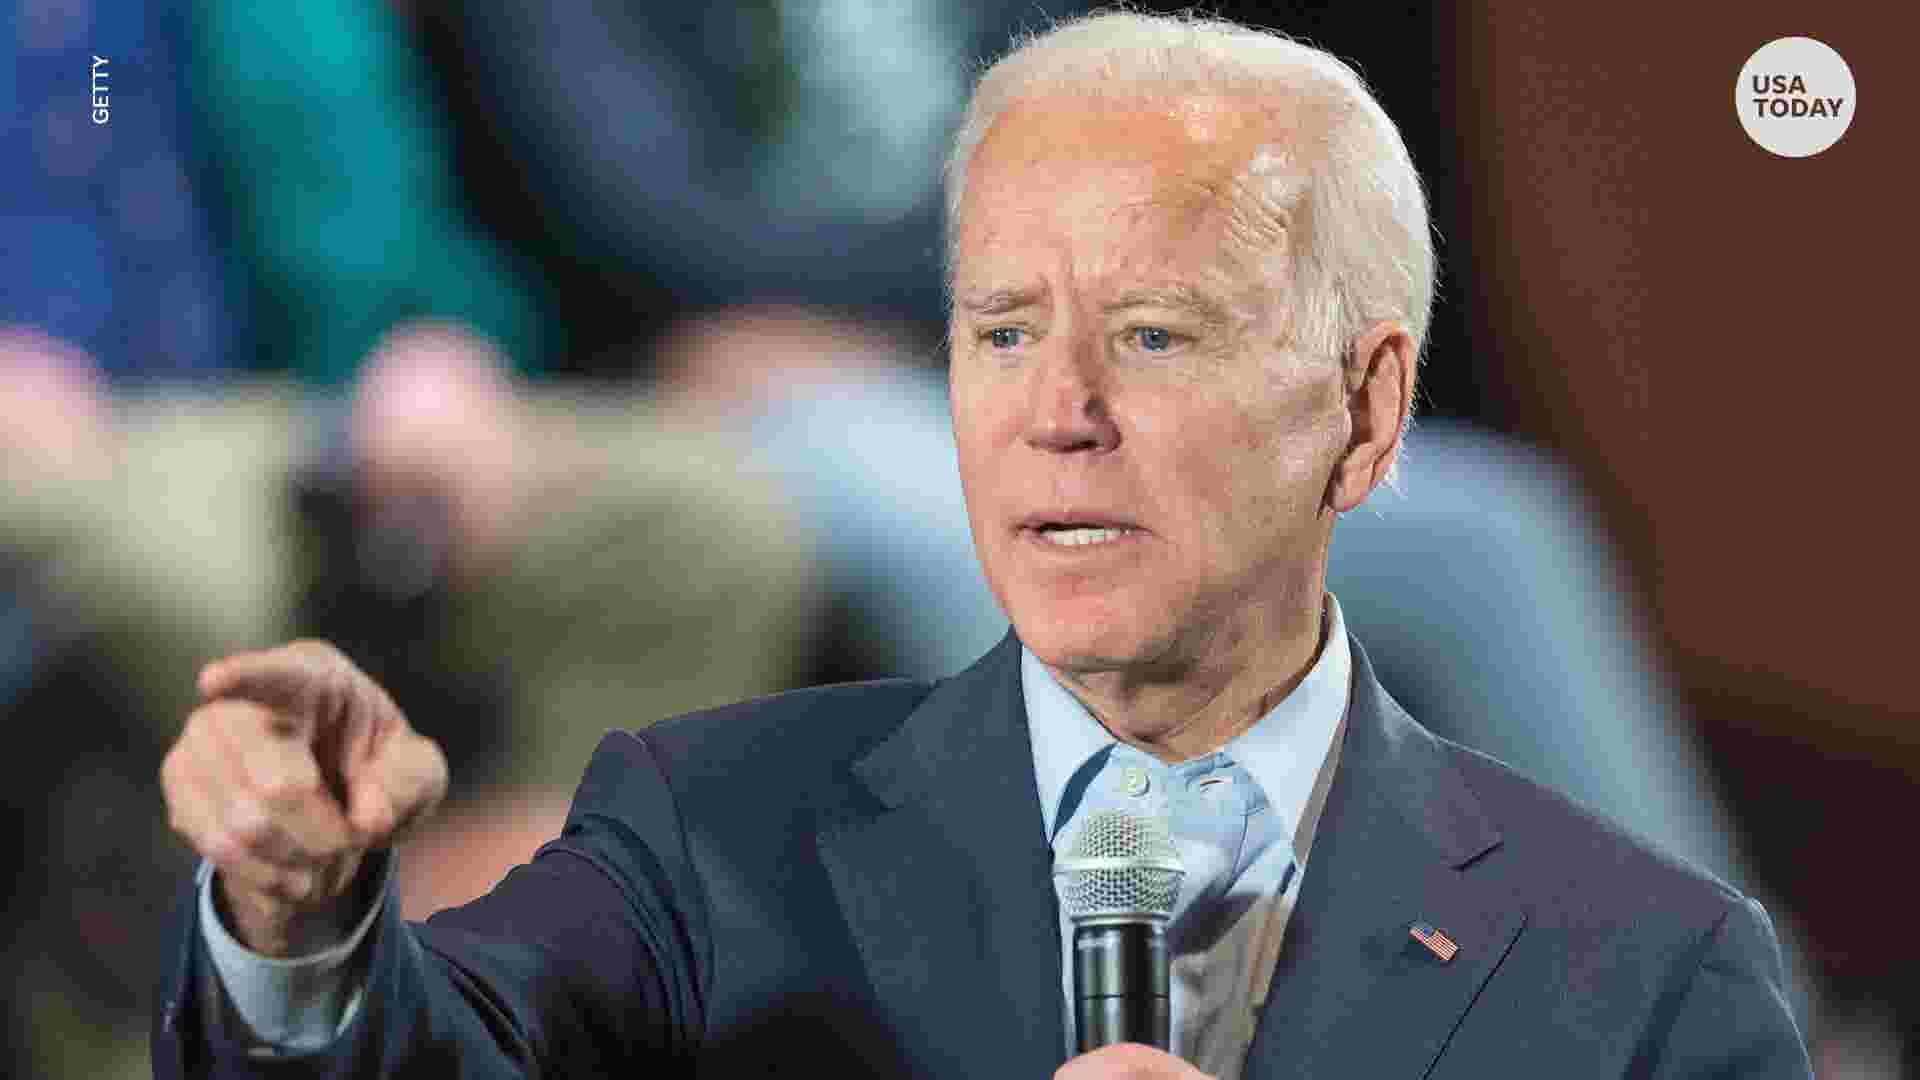 Joe Biden Confronts Hecklers Calling Him Pervert Quid Pro Joe